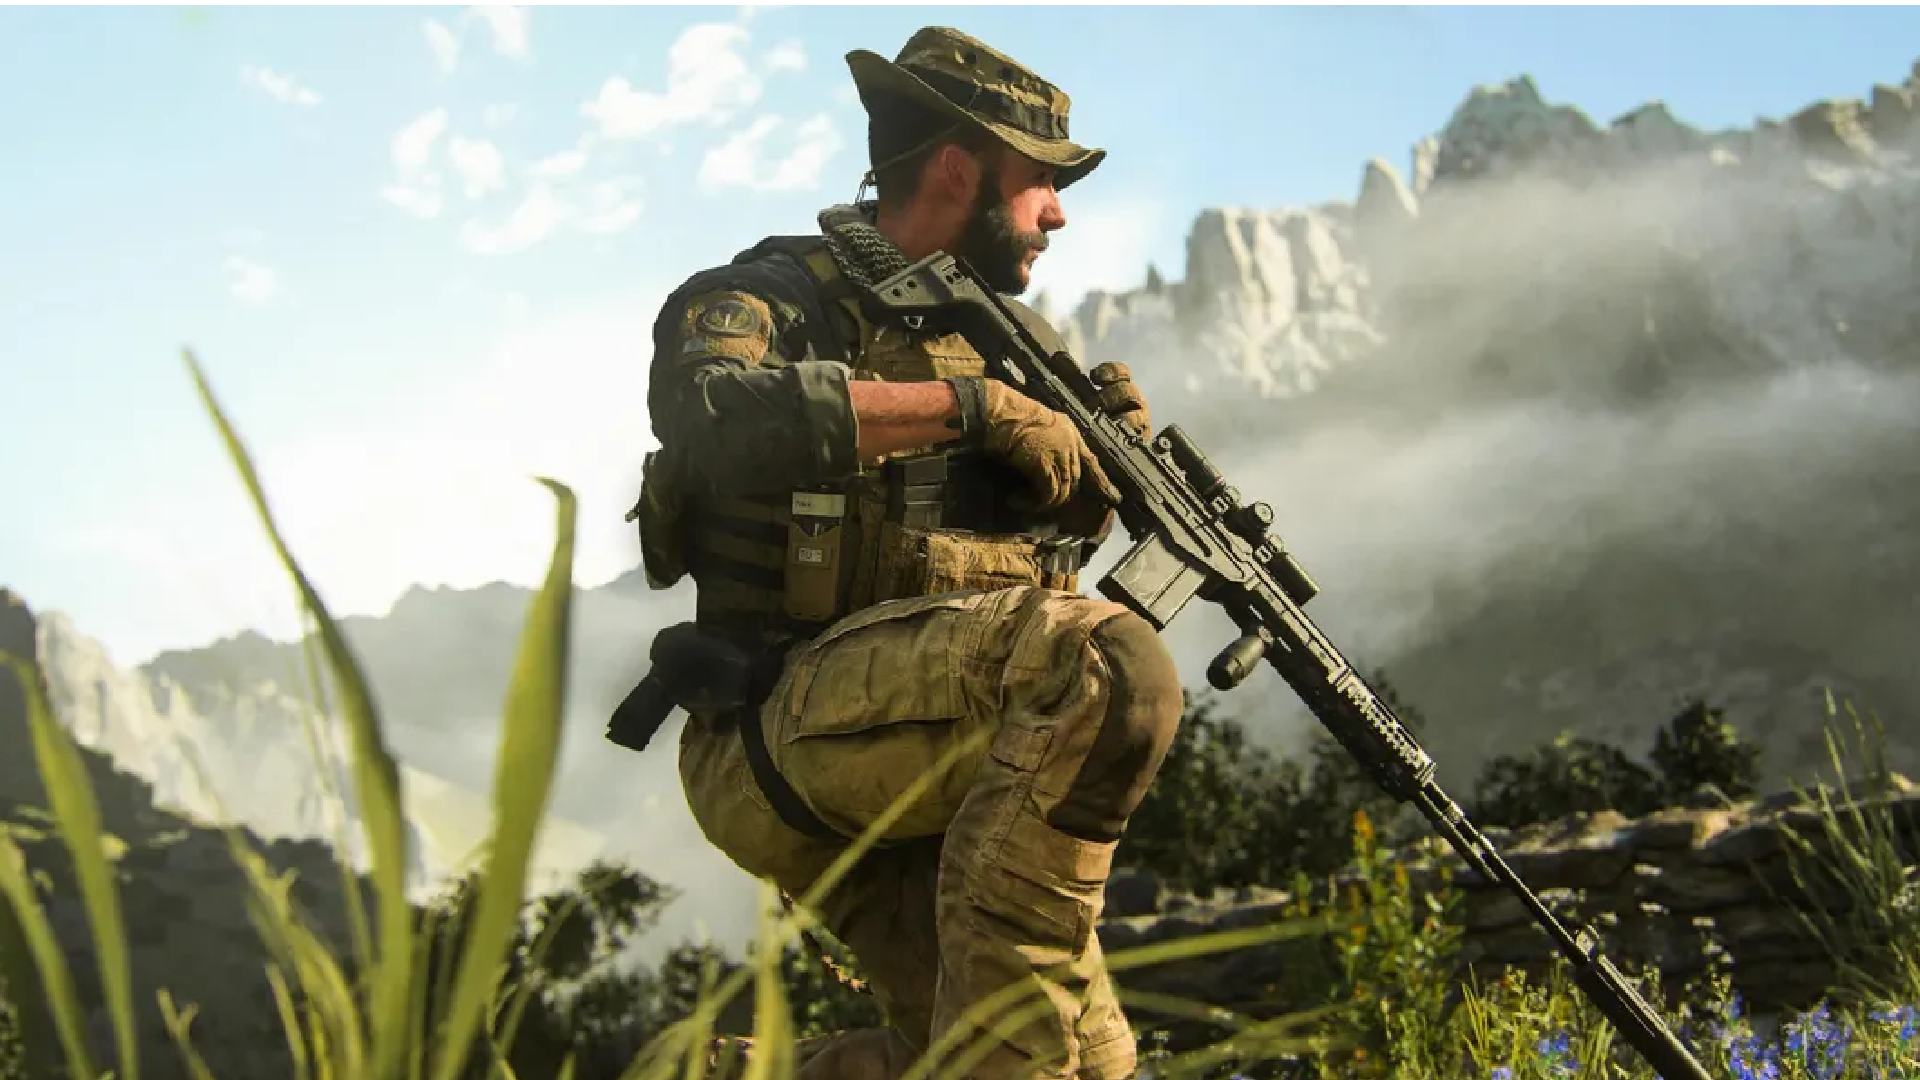 Xbox теперь показывает полноэкранную рекламу Modern Warfare 3 на стартовом экране, что вызывает критику со стороны пользователей